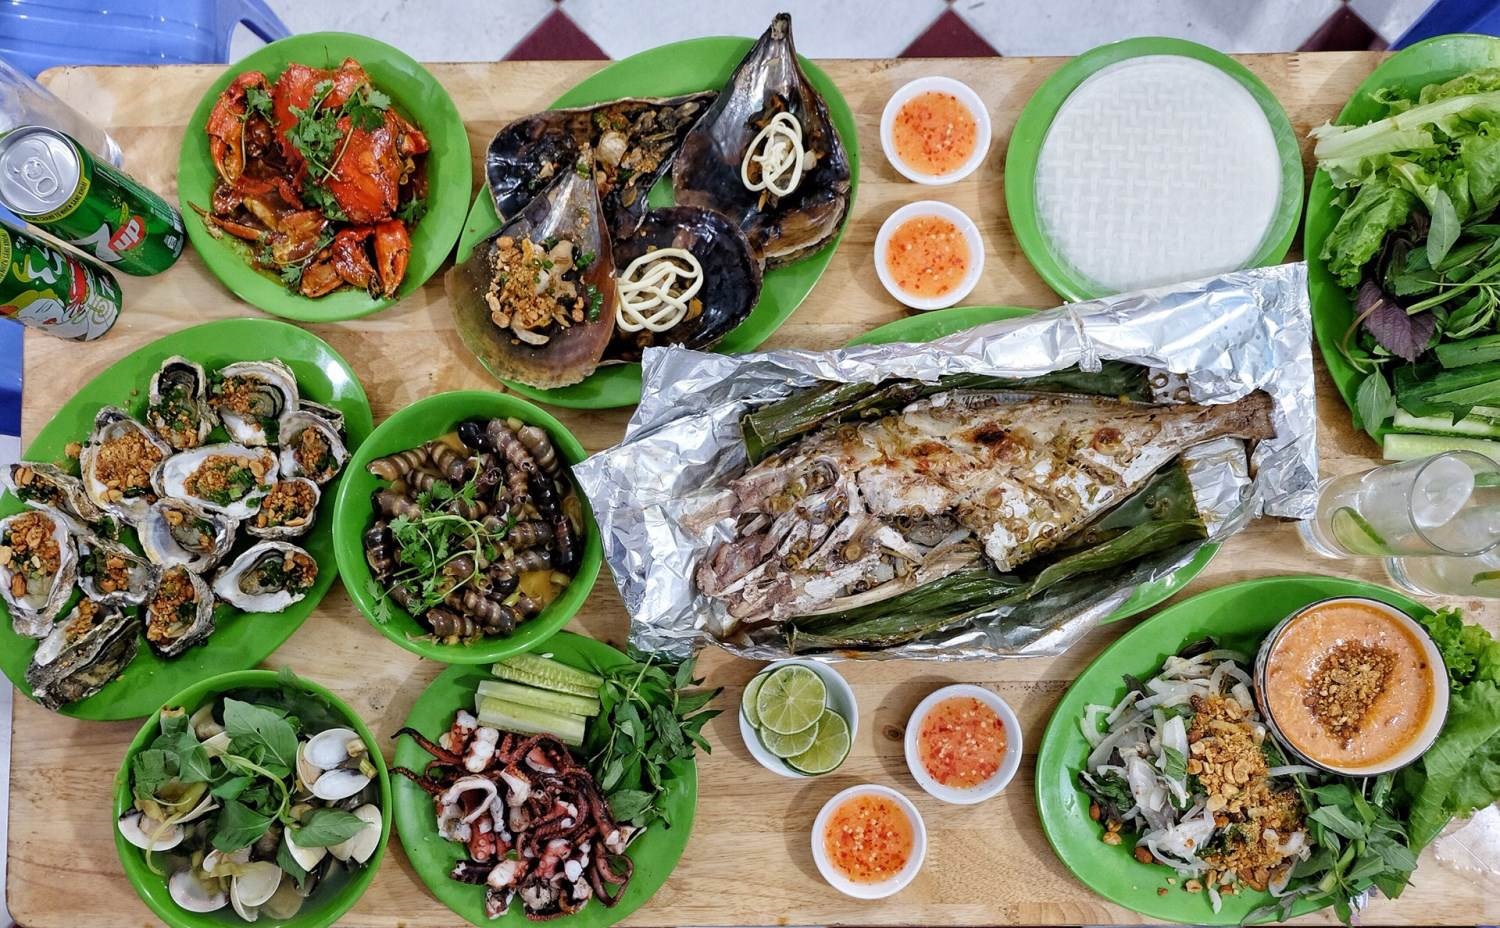 Một bàn hải sản hấp dẫn với cua sốt, cá nướng, ngao hấp, hàu nướng, bạch tuộc, sò, gỏi sứa